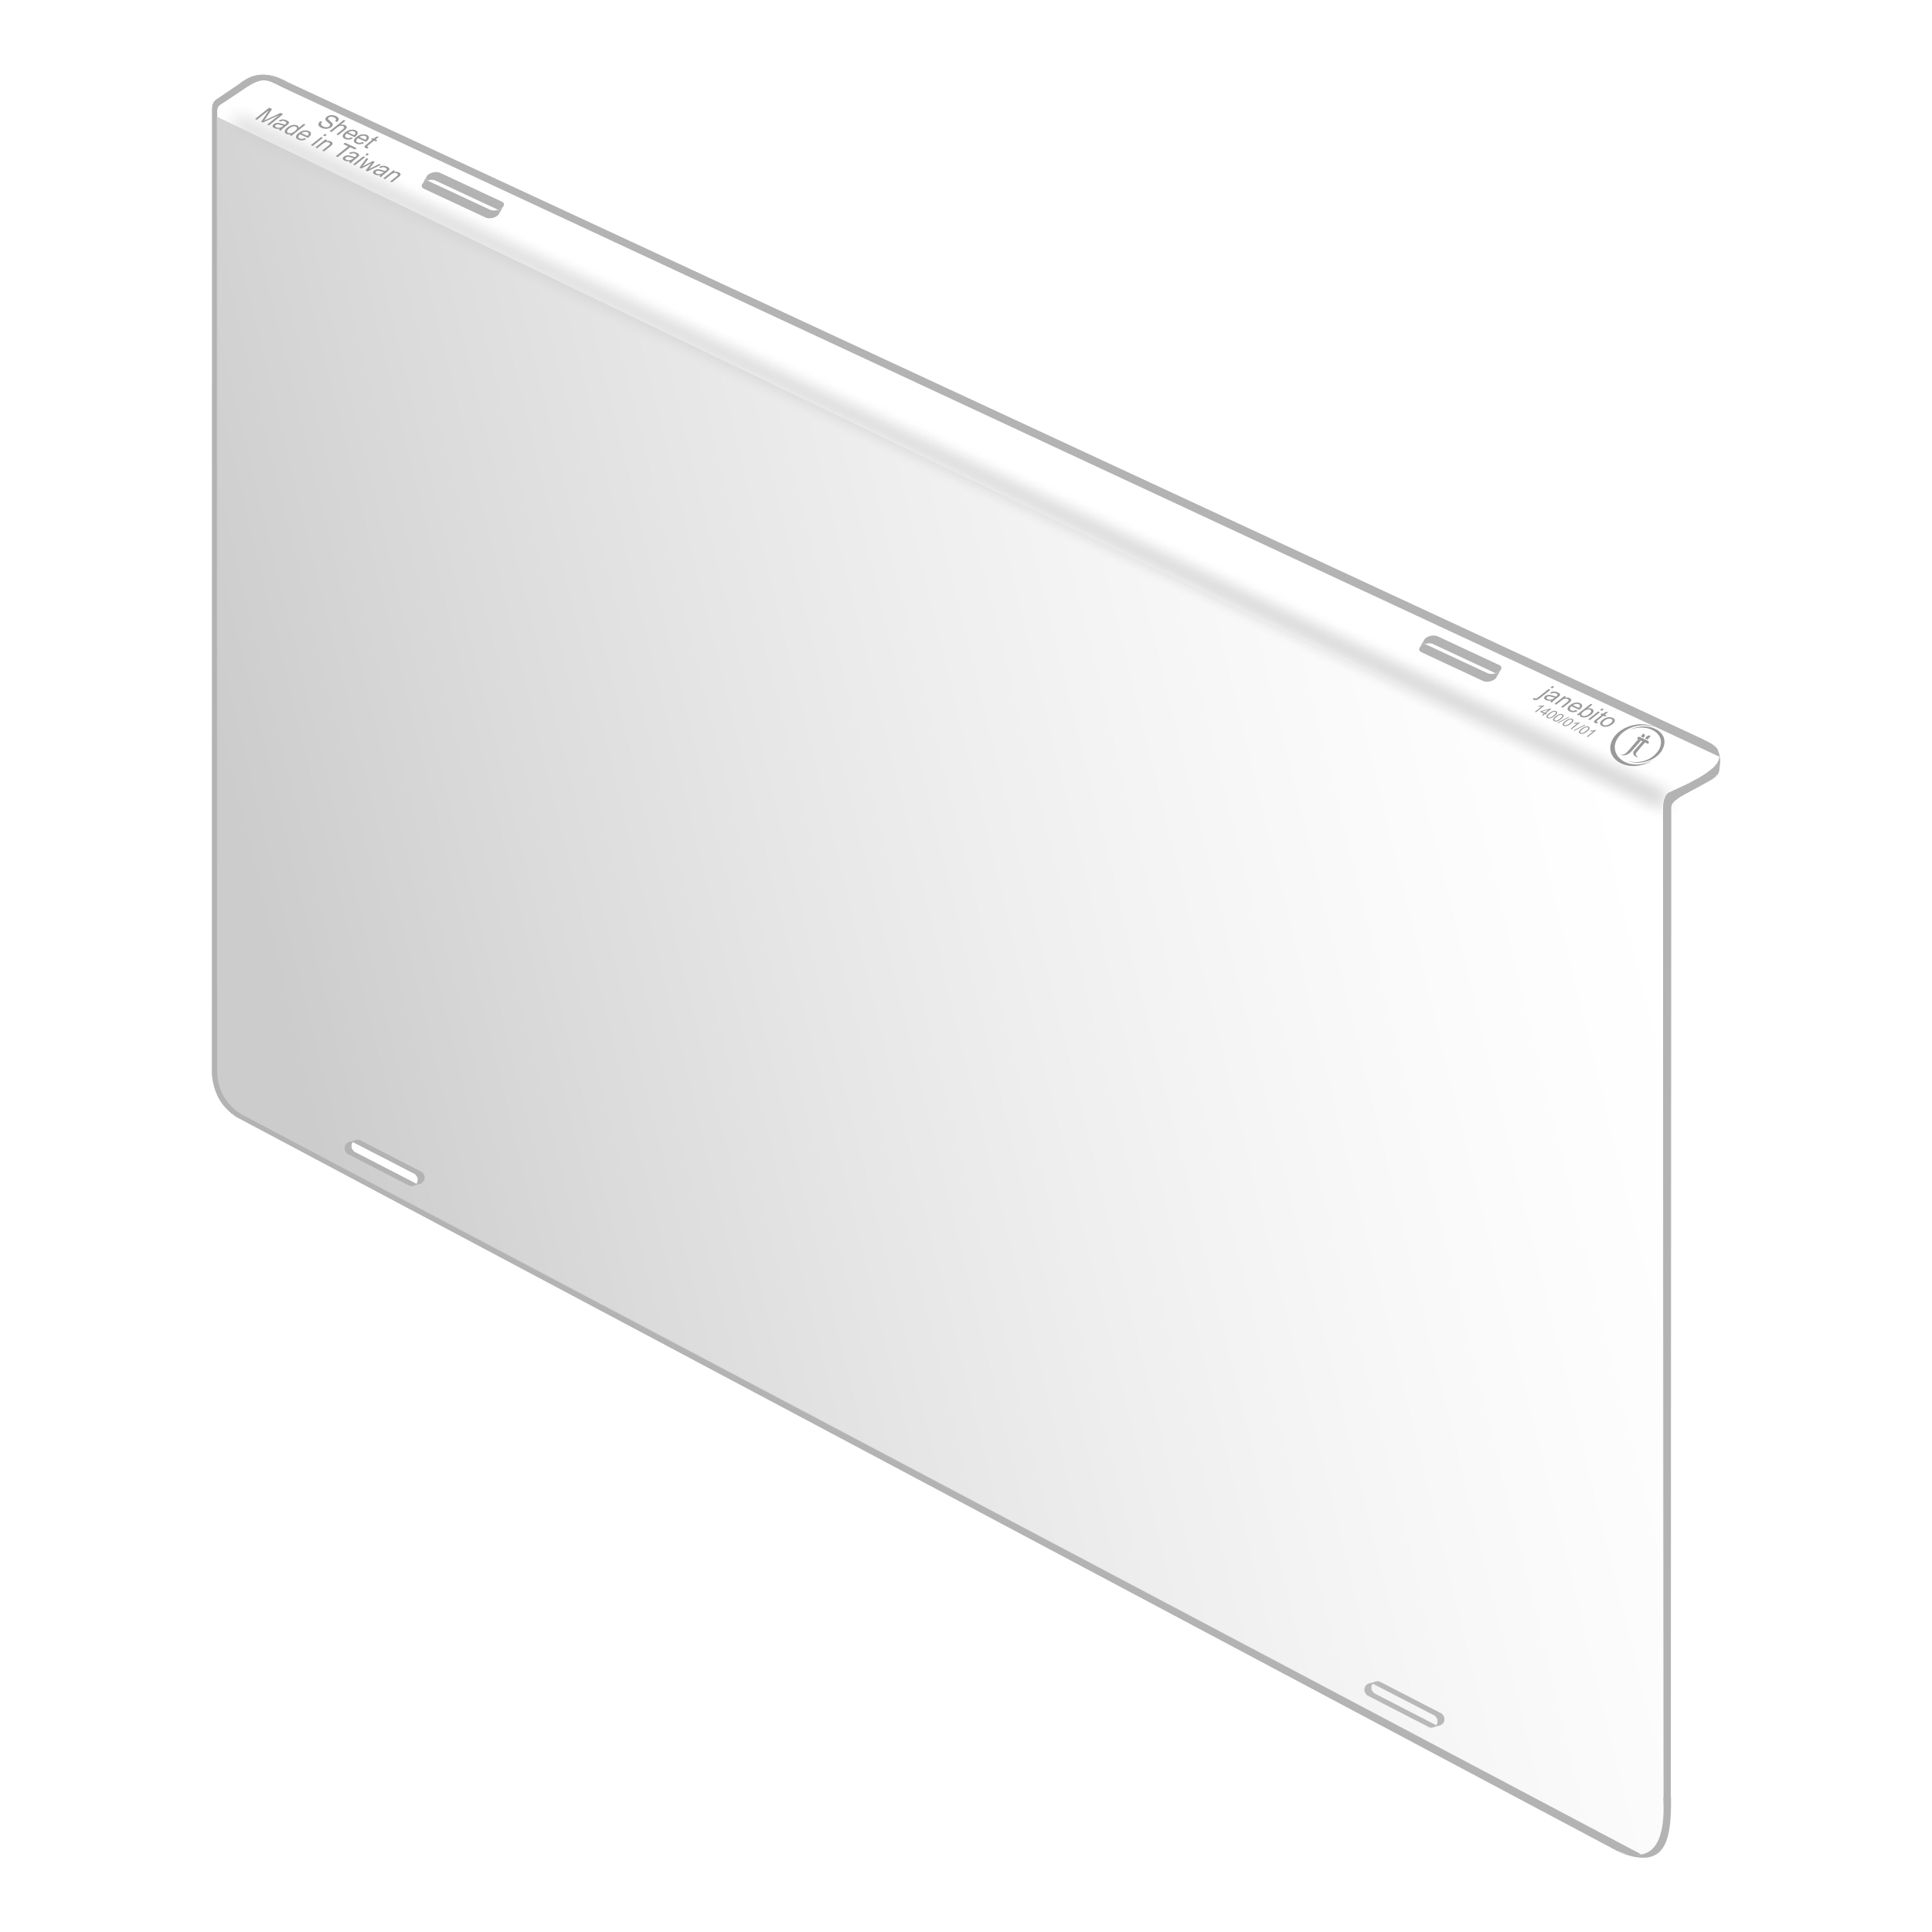 محافظ صفحه نمایش تلویزیون مدل 75 Standard 
مناسب برای تلویزیون 75 اینچ